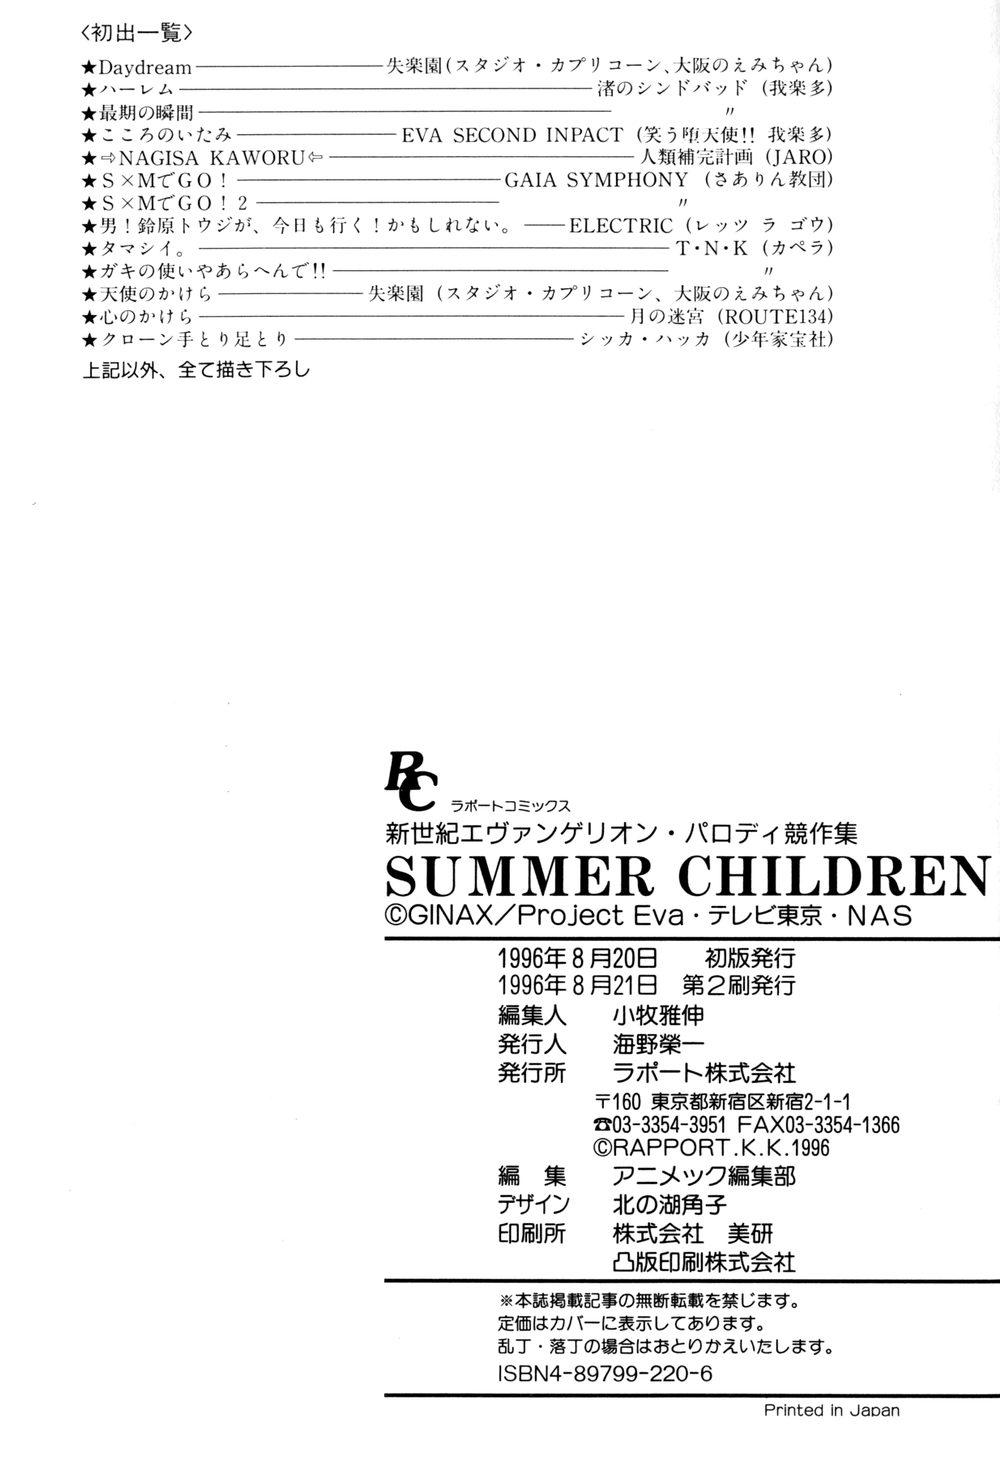 Summer Children – Neon Genesis Evangelion Parody Anthology 197